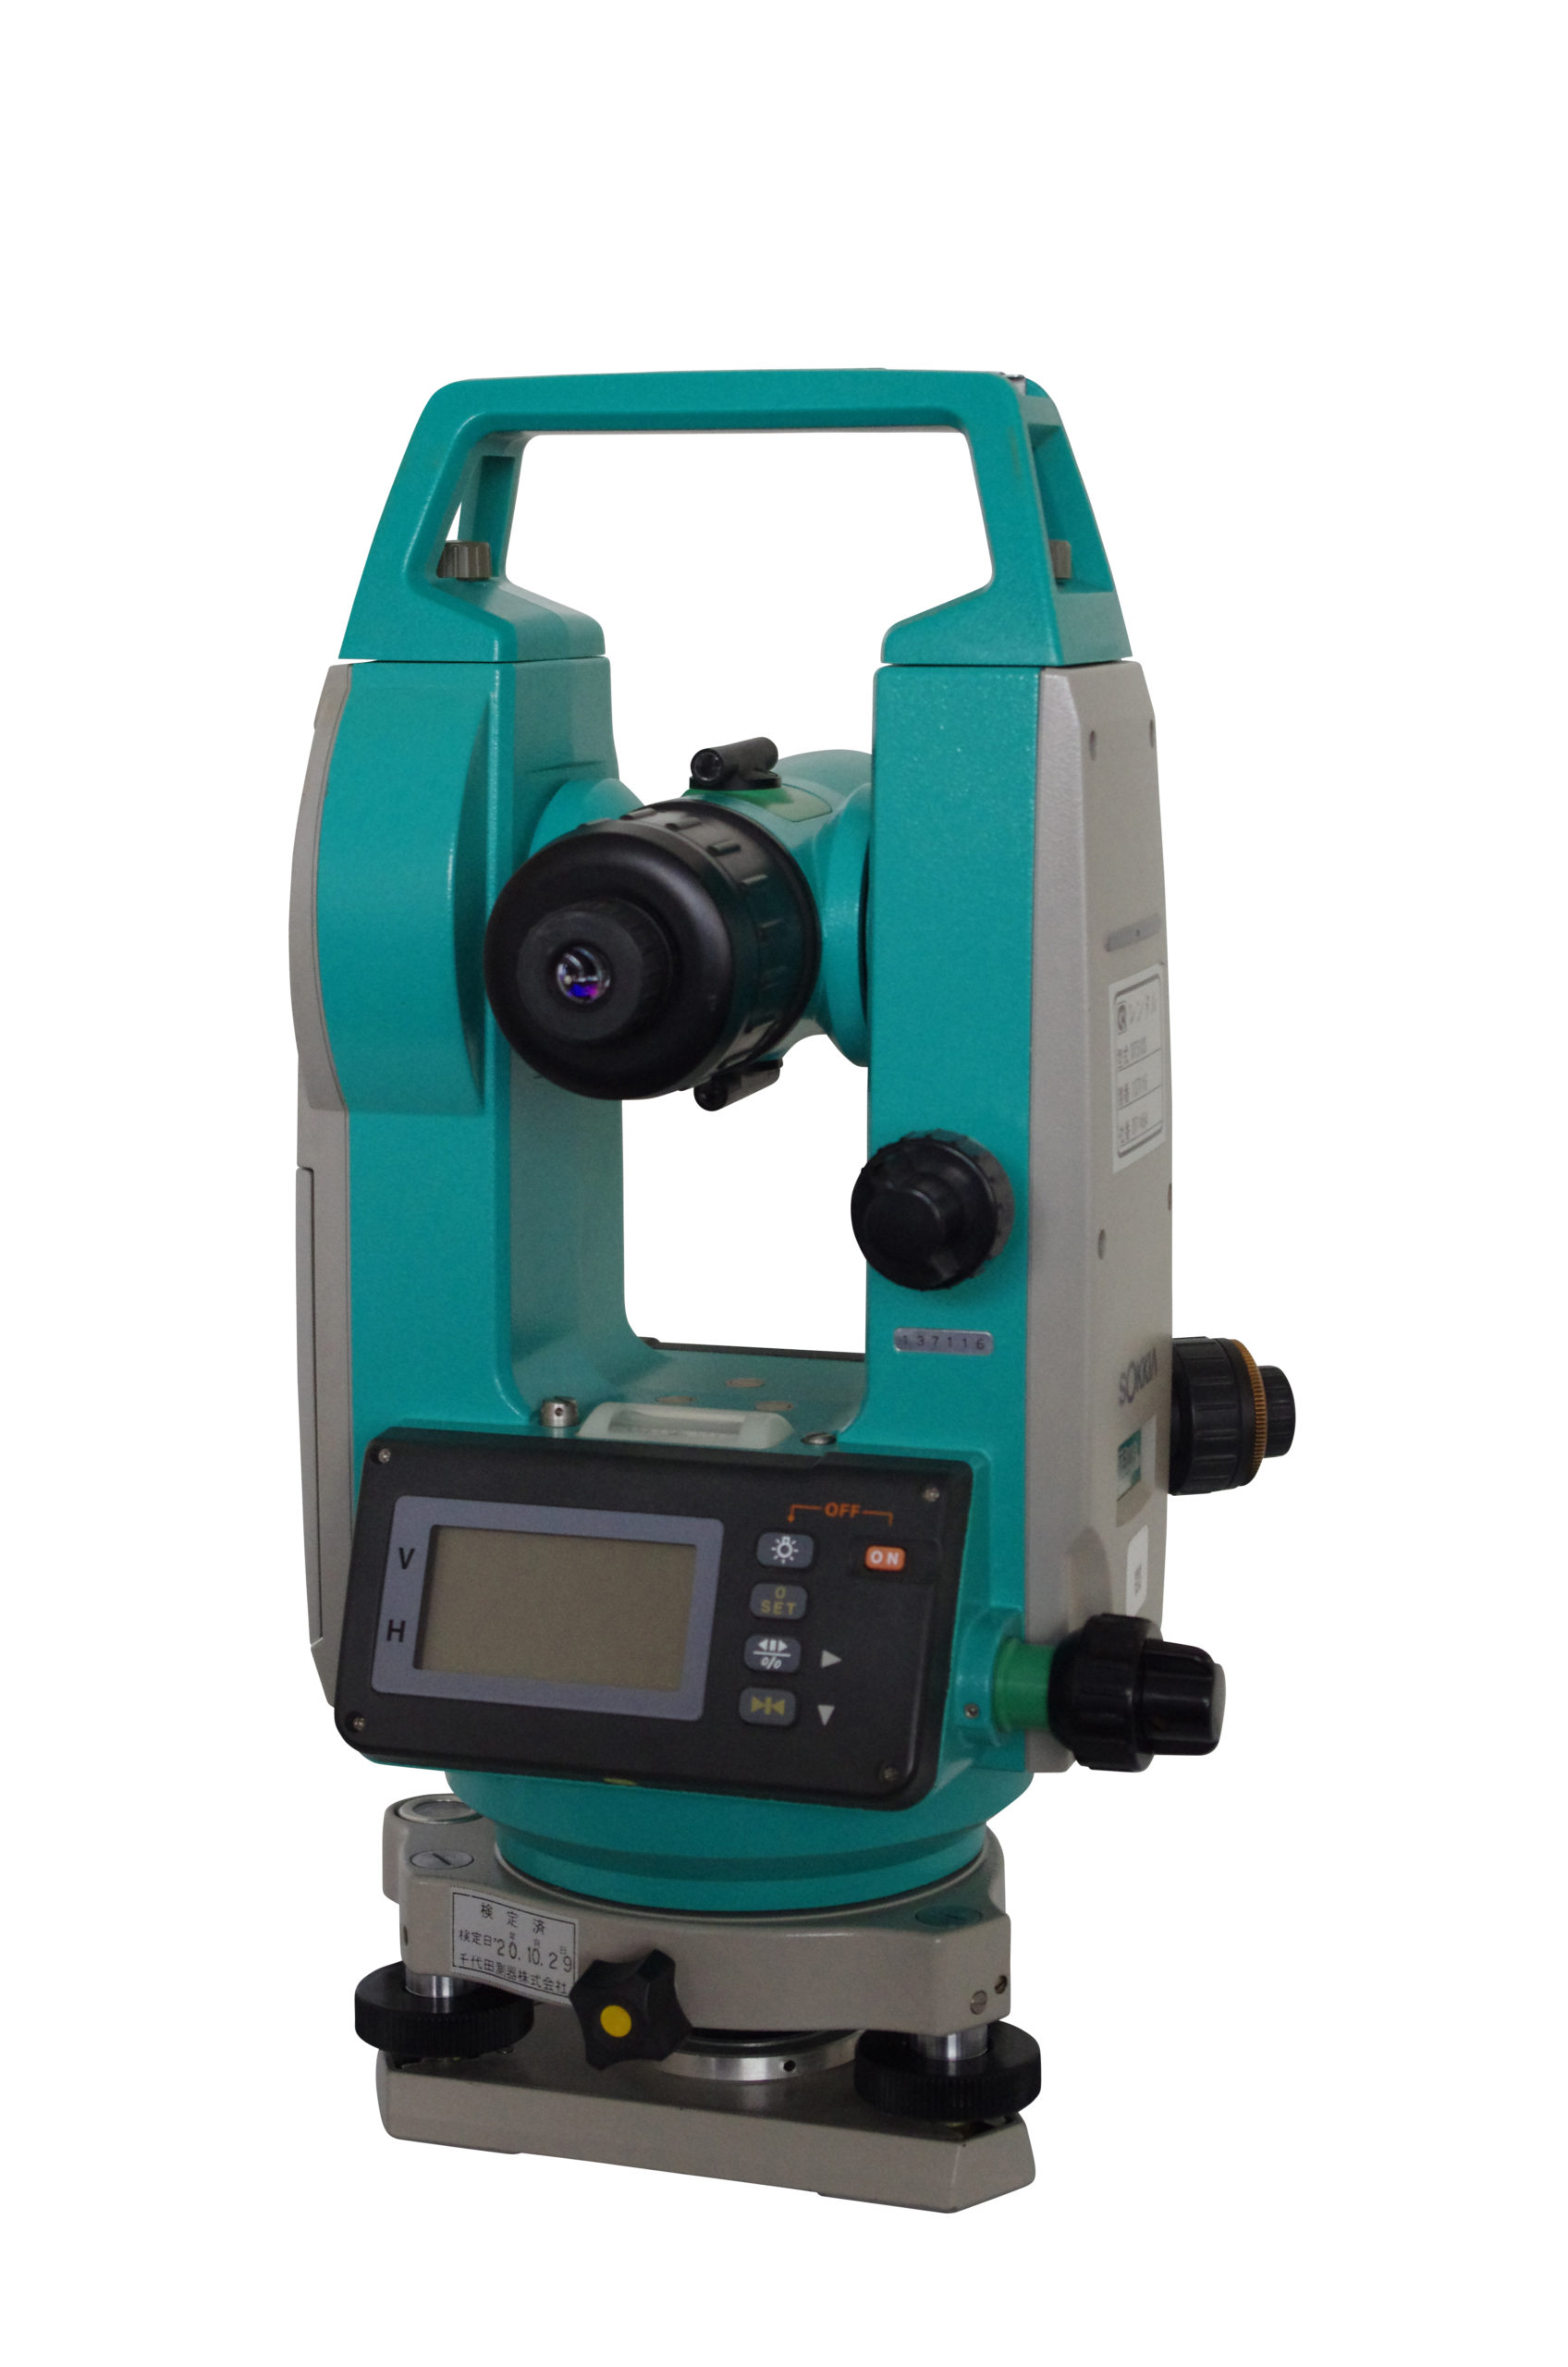 ソキア DT-600S セオドライト 測量機 - 工具、DIY用品